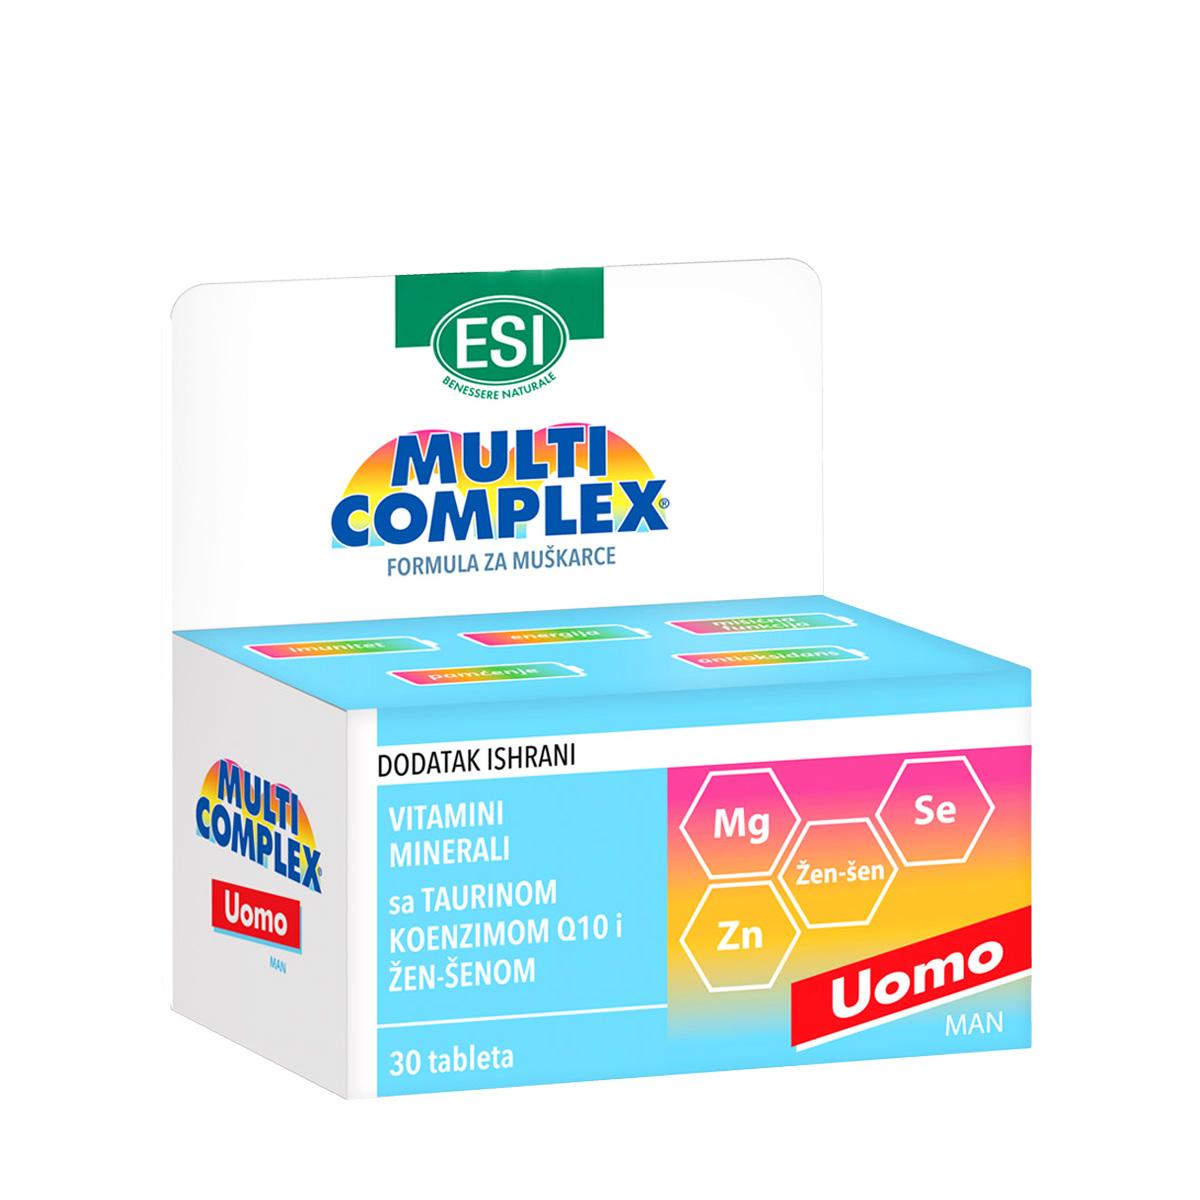 ESI Multikompleks vitamina i minerala sa taurinom za muškarce Uomo 30 tableta 104280.0